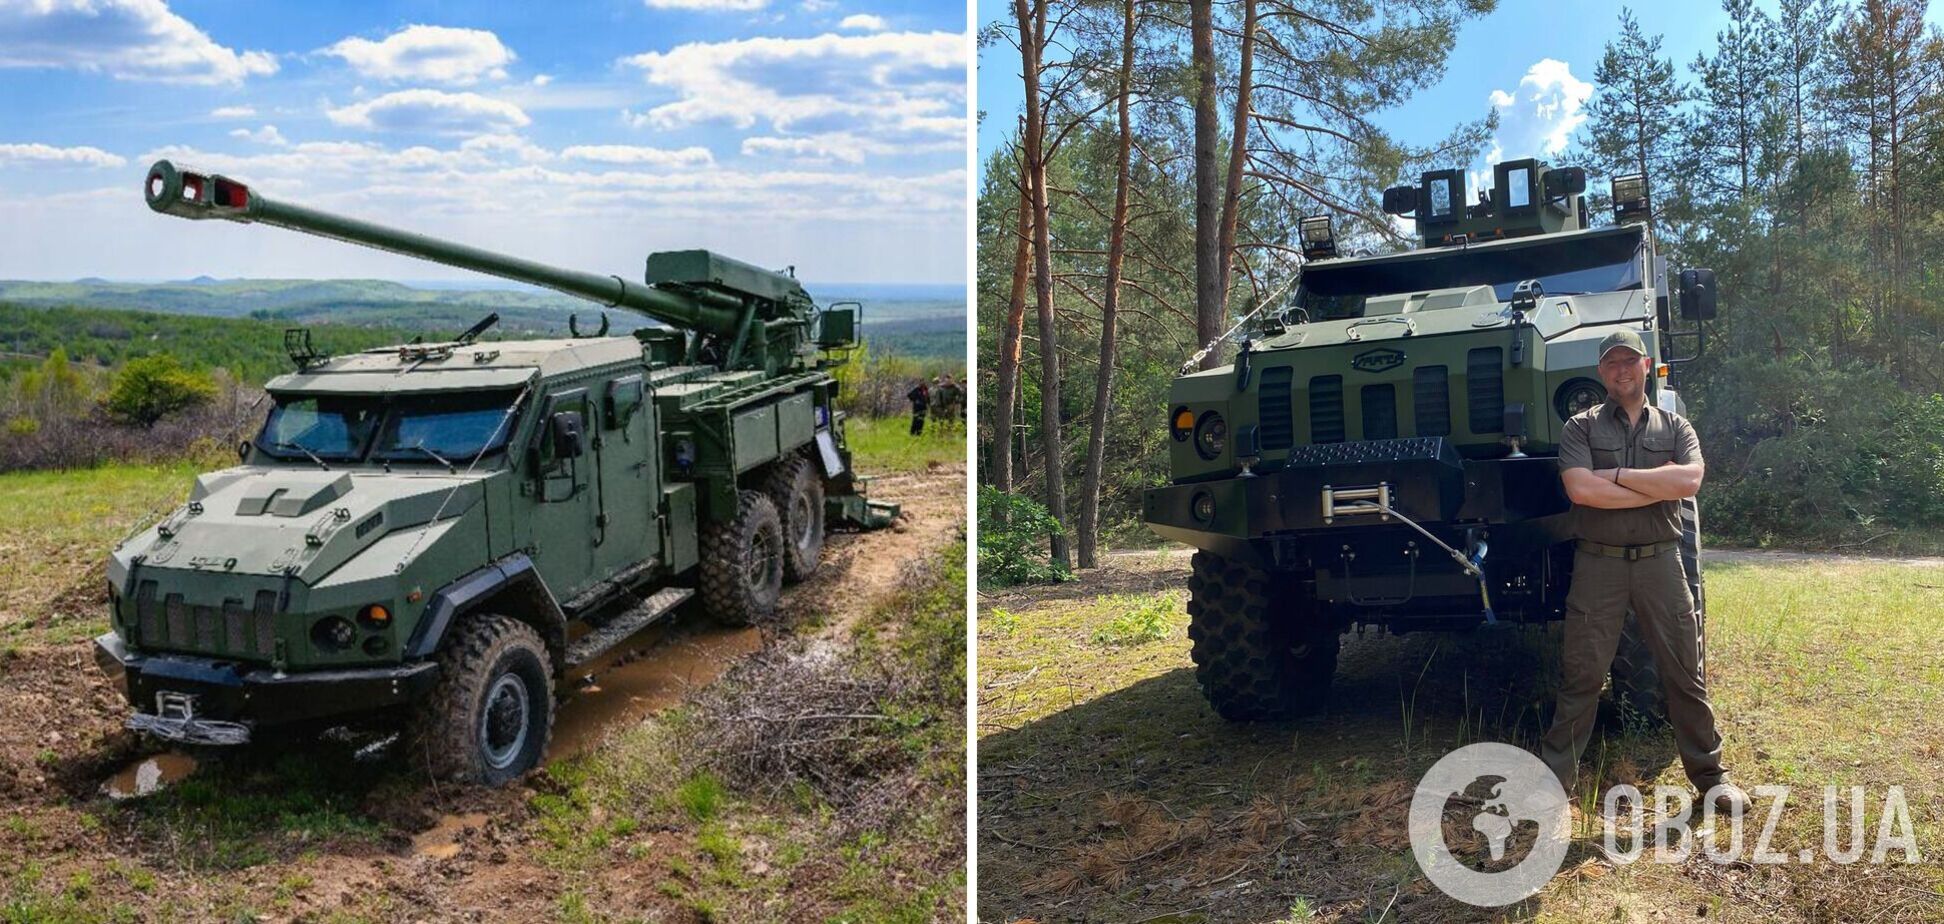 Украина будет производить вооружение вместе с вооруженными концернами из стран Запада, – гендиректор 'Украинской бронетехники'